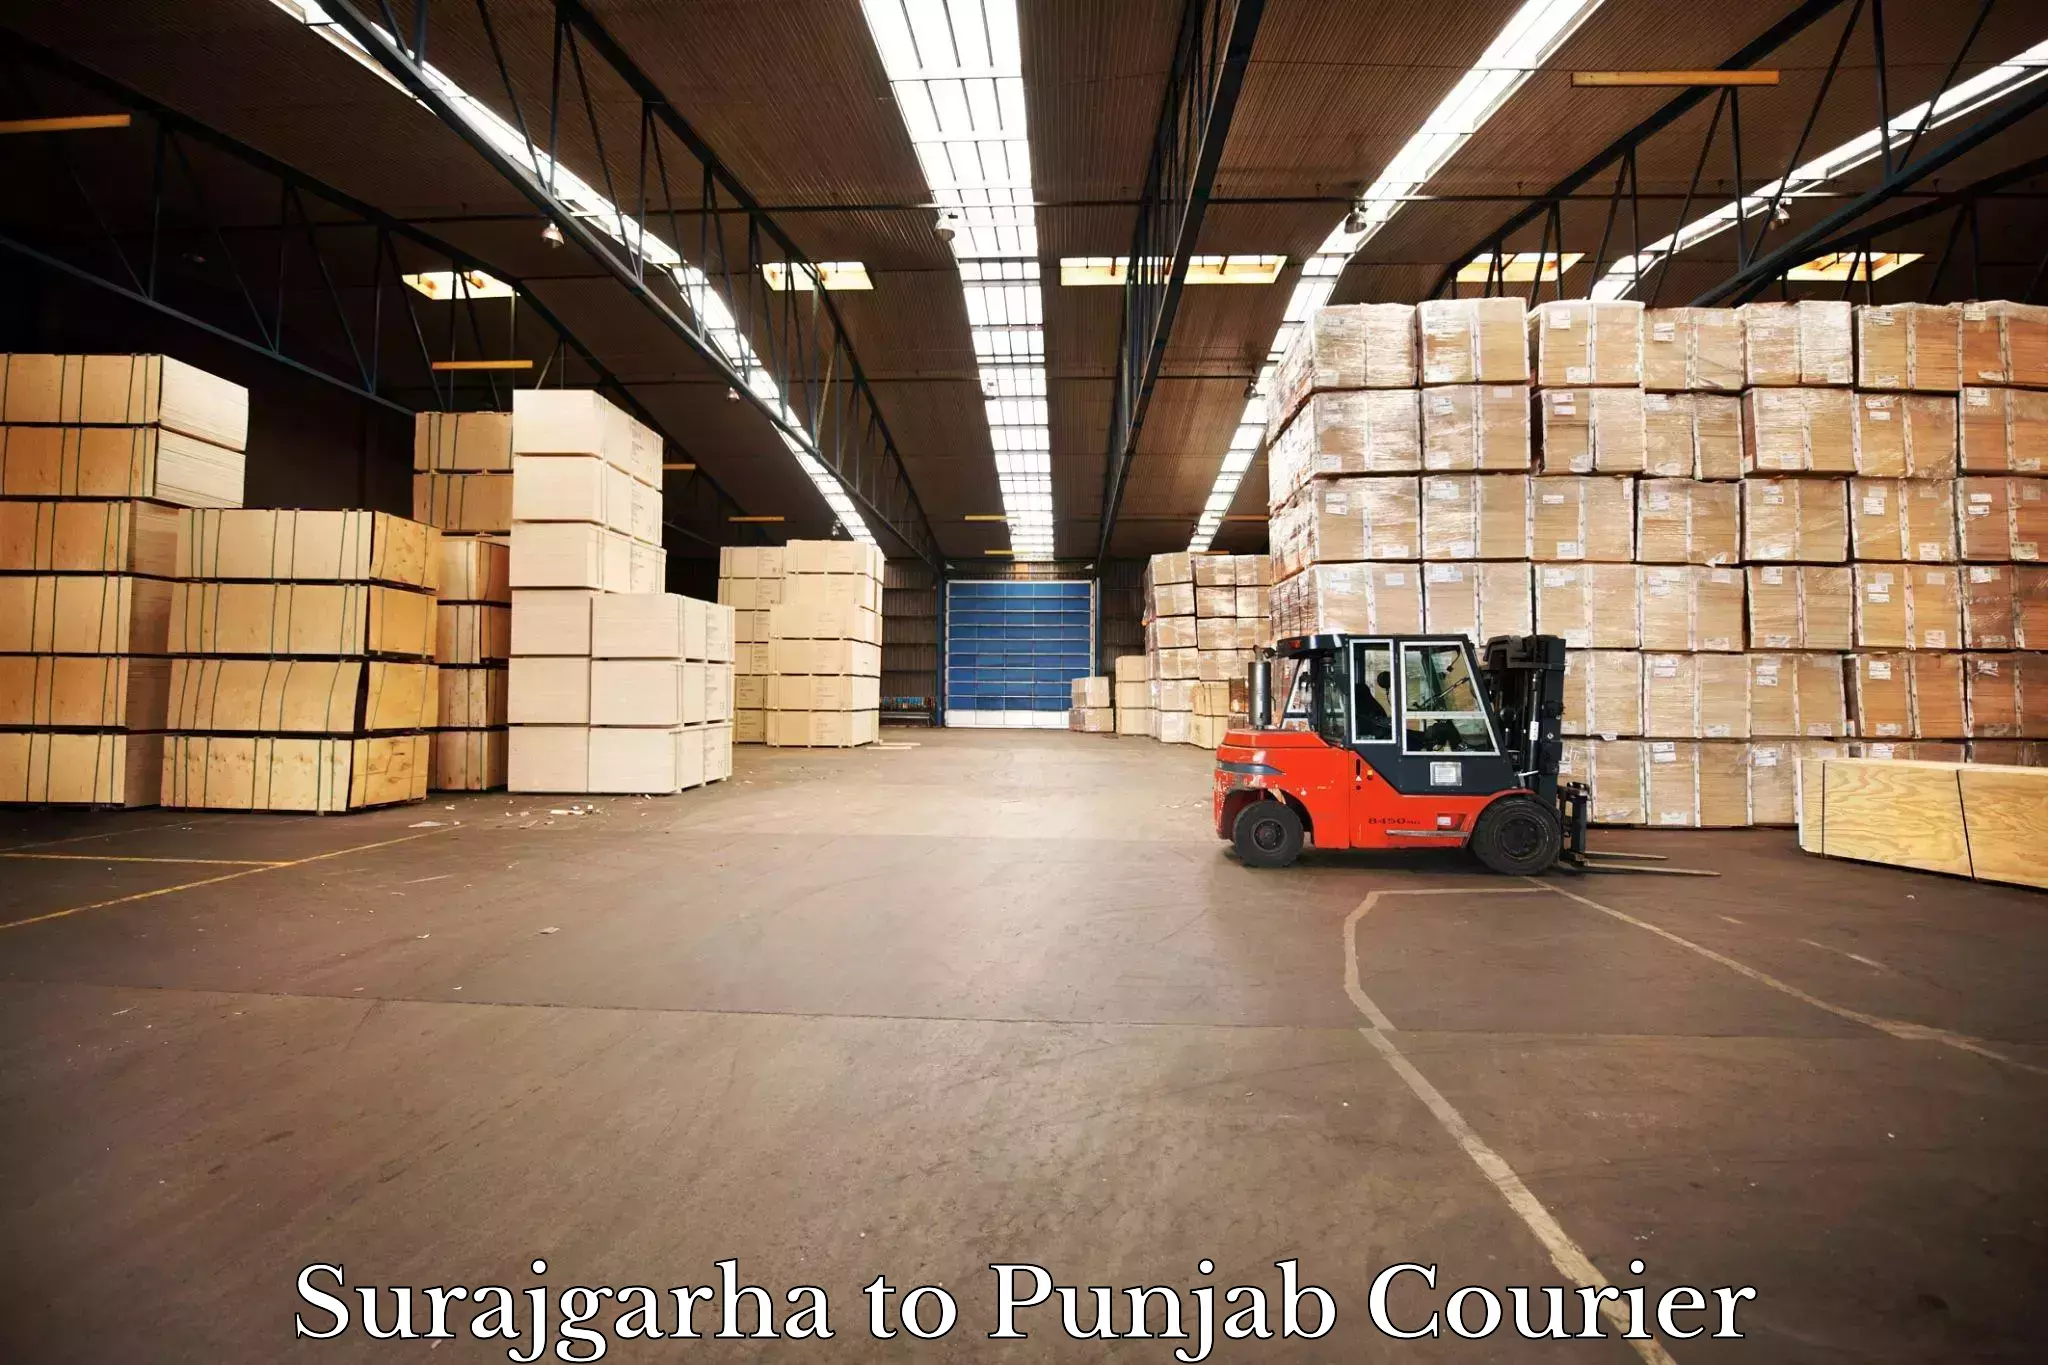 Nationwide courier service Surajgarha to IIT Ropar